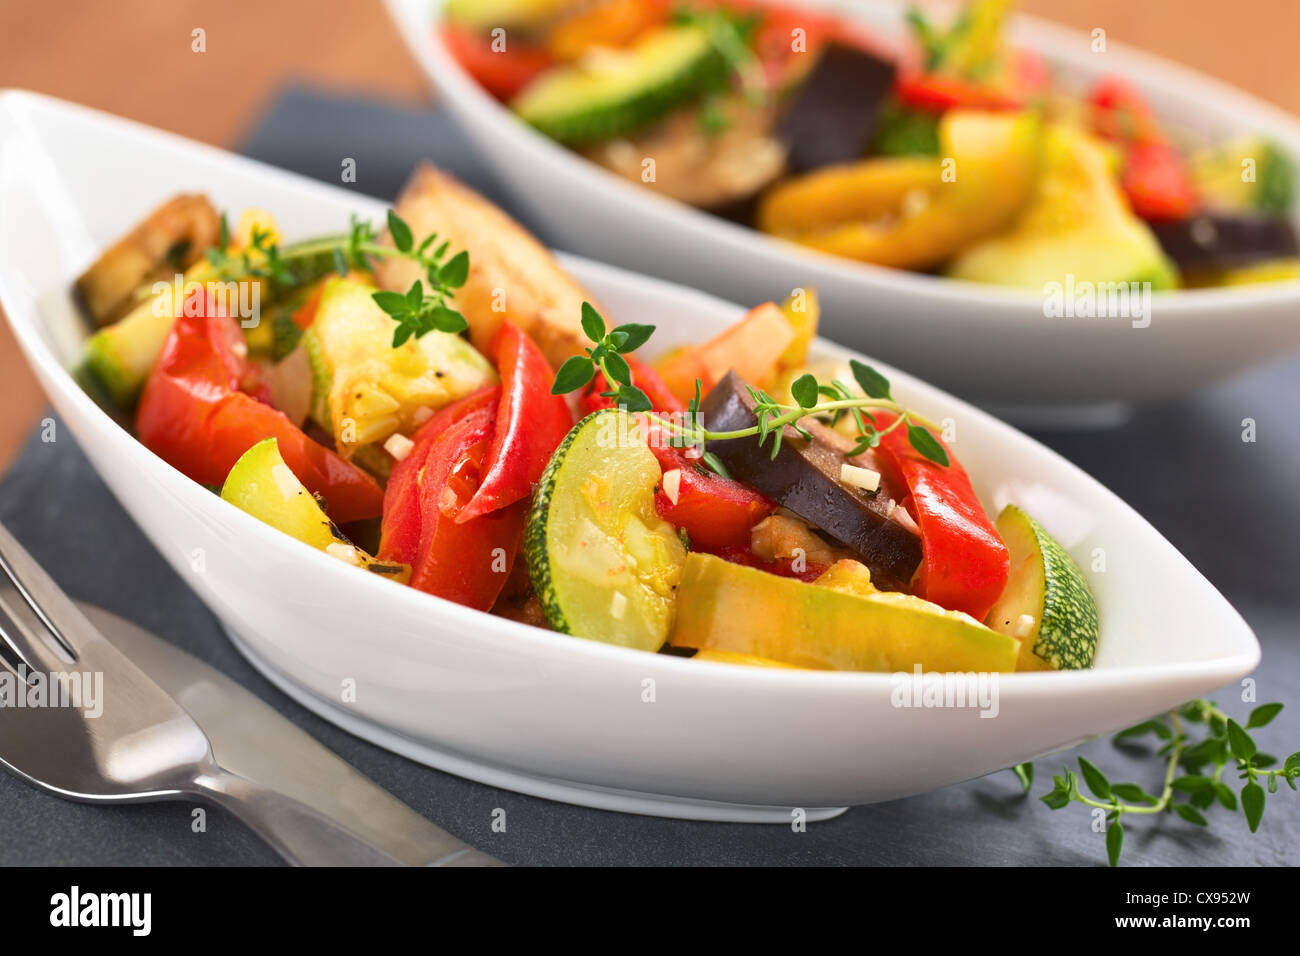 Deux bols de légumes Ratatouille maison faite de l'aubergine, la courgette, le poivron et la tomate et assaisonné avec des herbes Banque D'Images